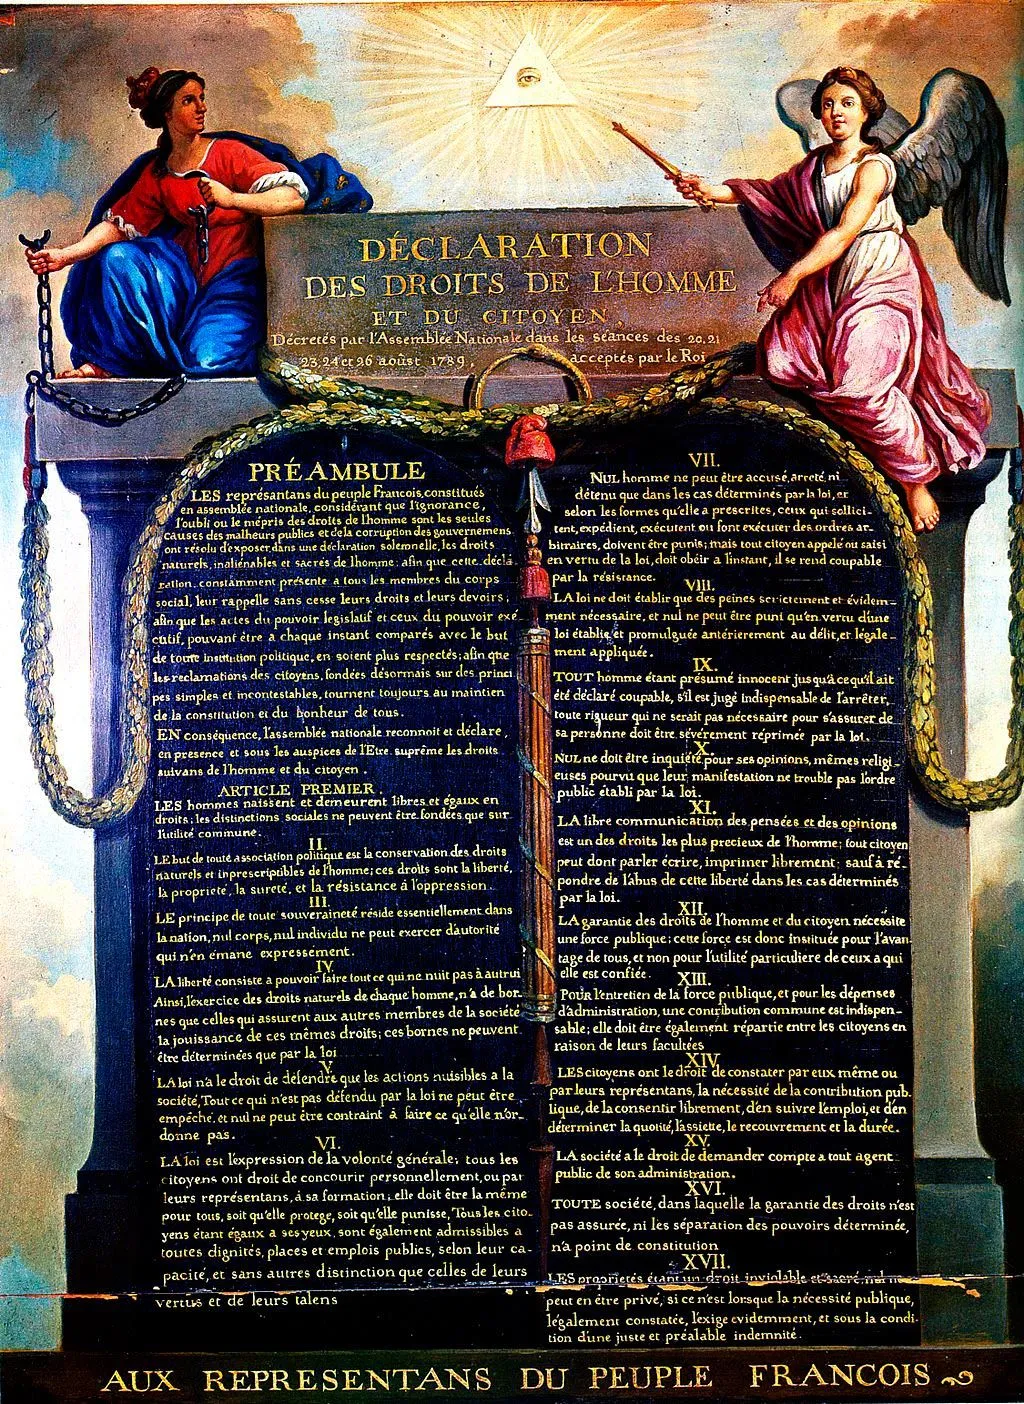 Jean-Jacques-François Le Barbier, Déclaration des droits de l'homme et du citoyen, 1791, huile sur toile, 71 x 56 cm (Musée Carnavalet, Paris).